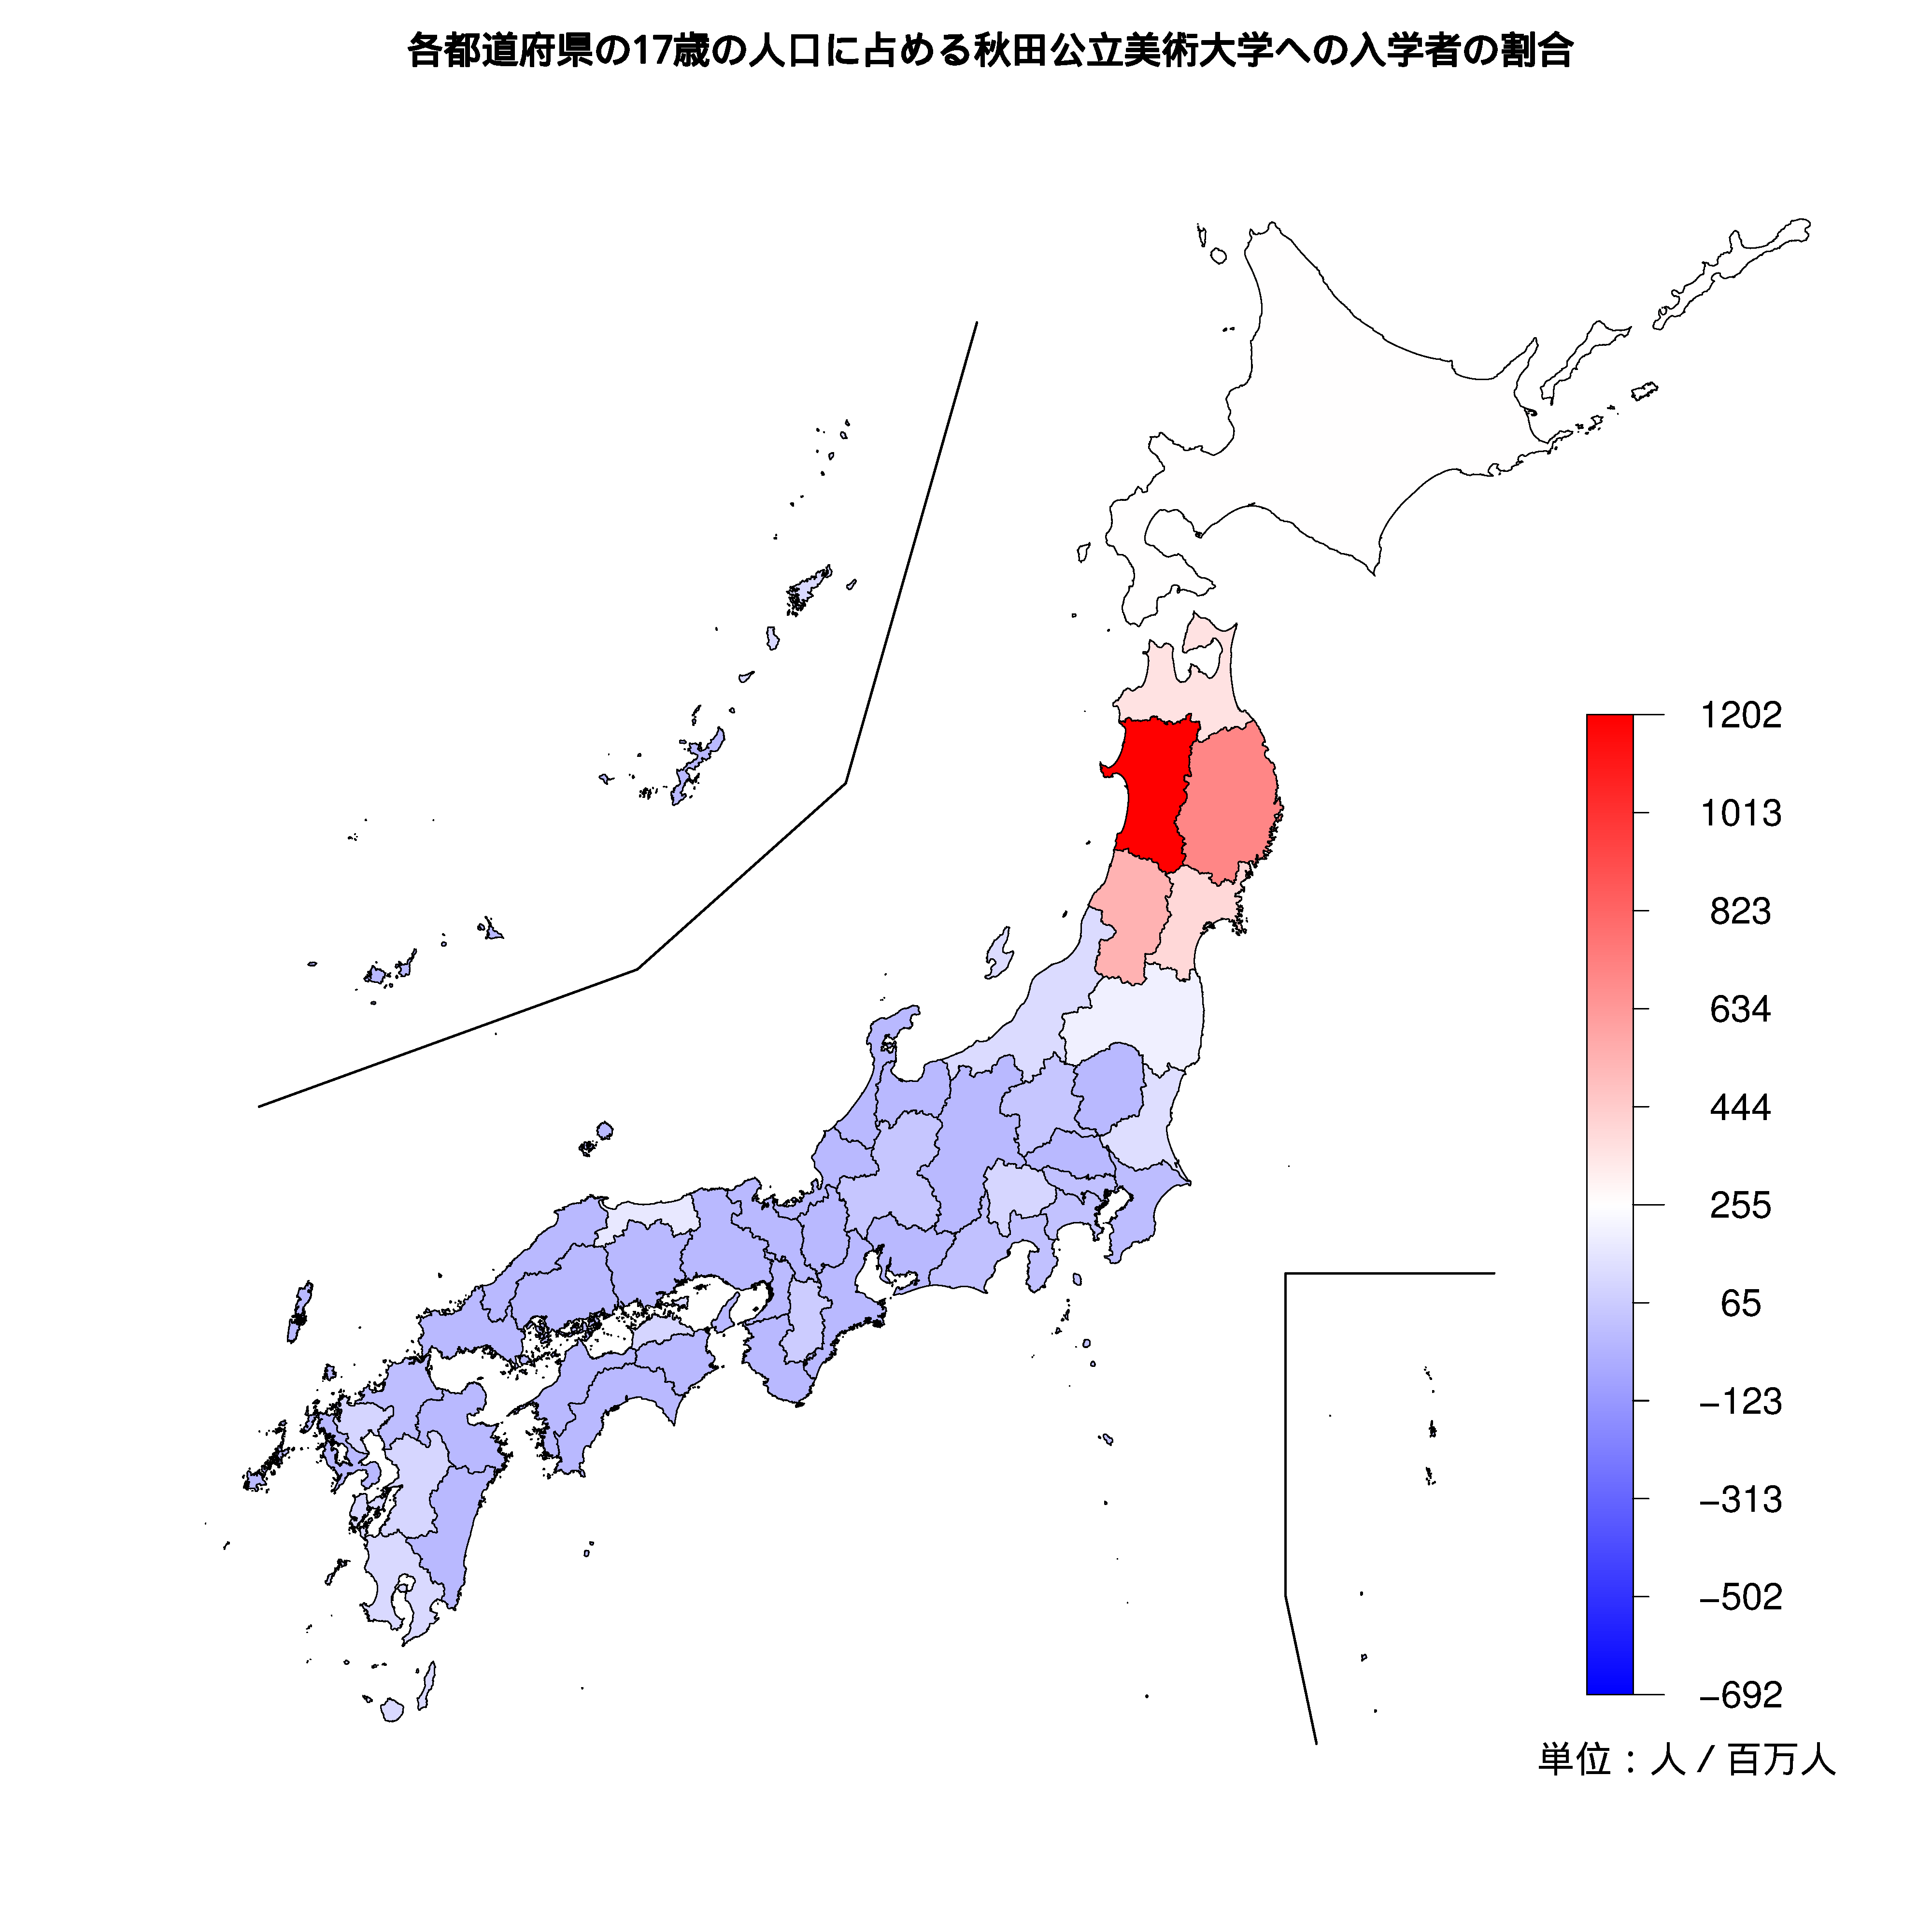 秋田公立美術大学への入学者が多い都道府県の色分け地図